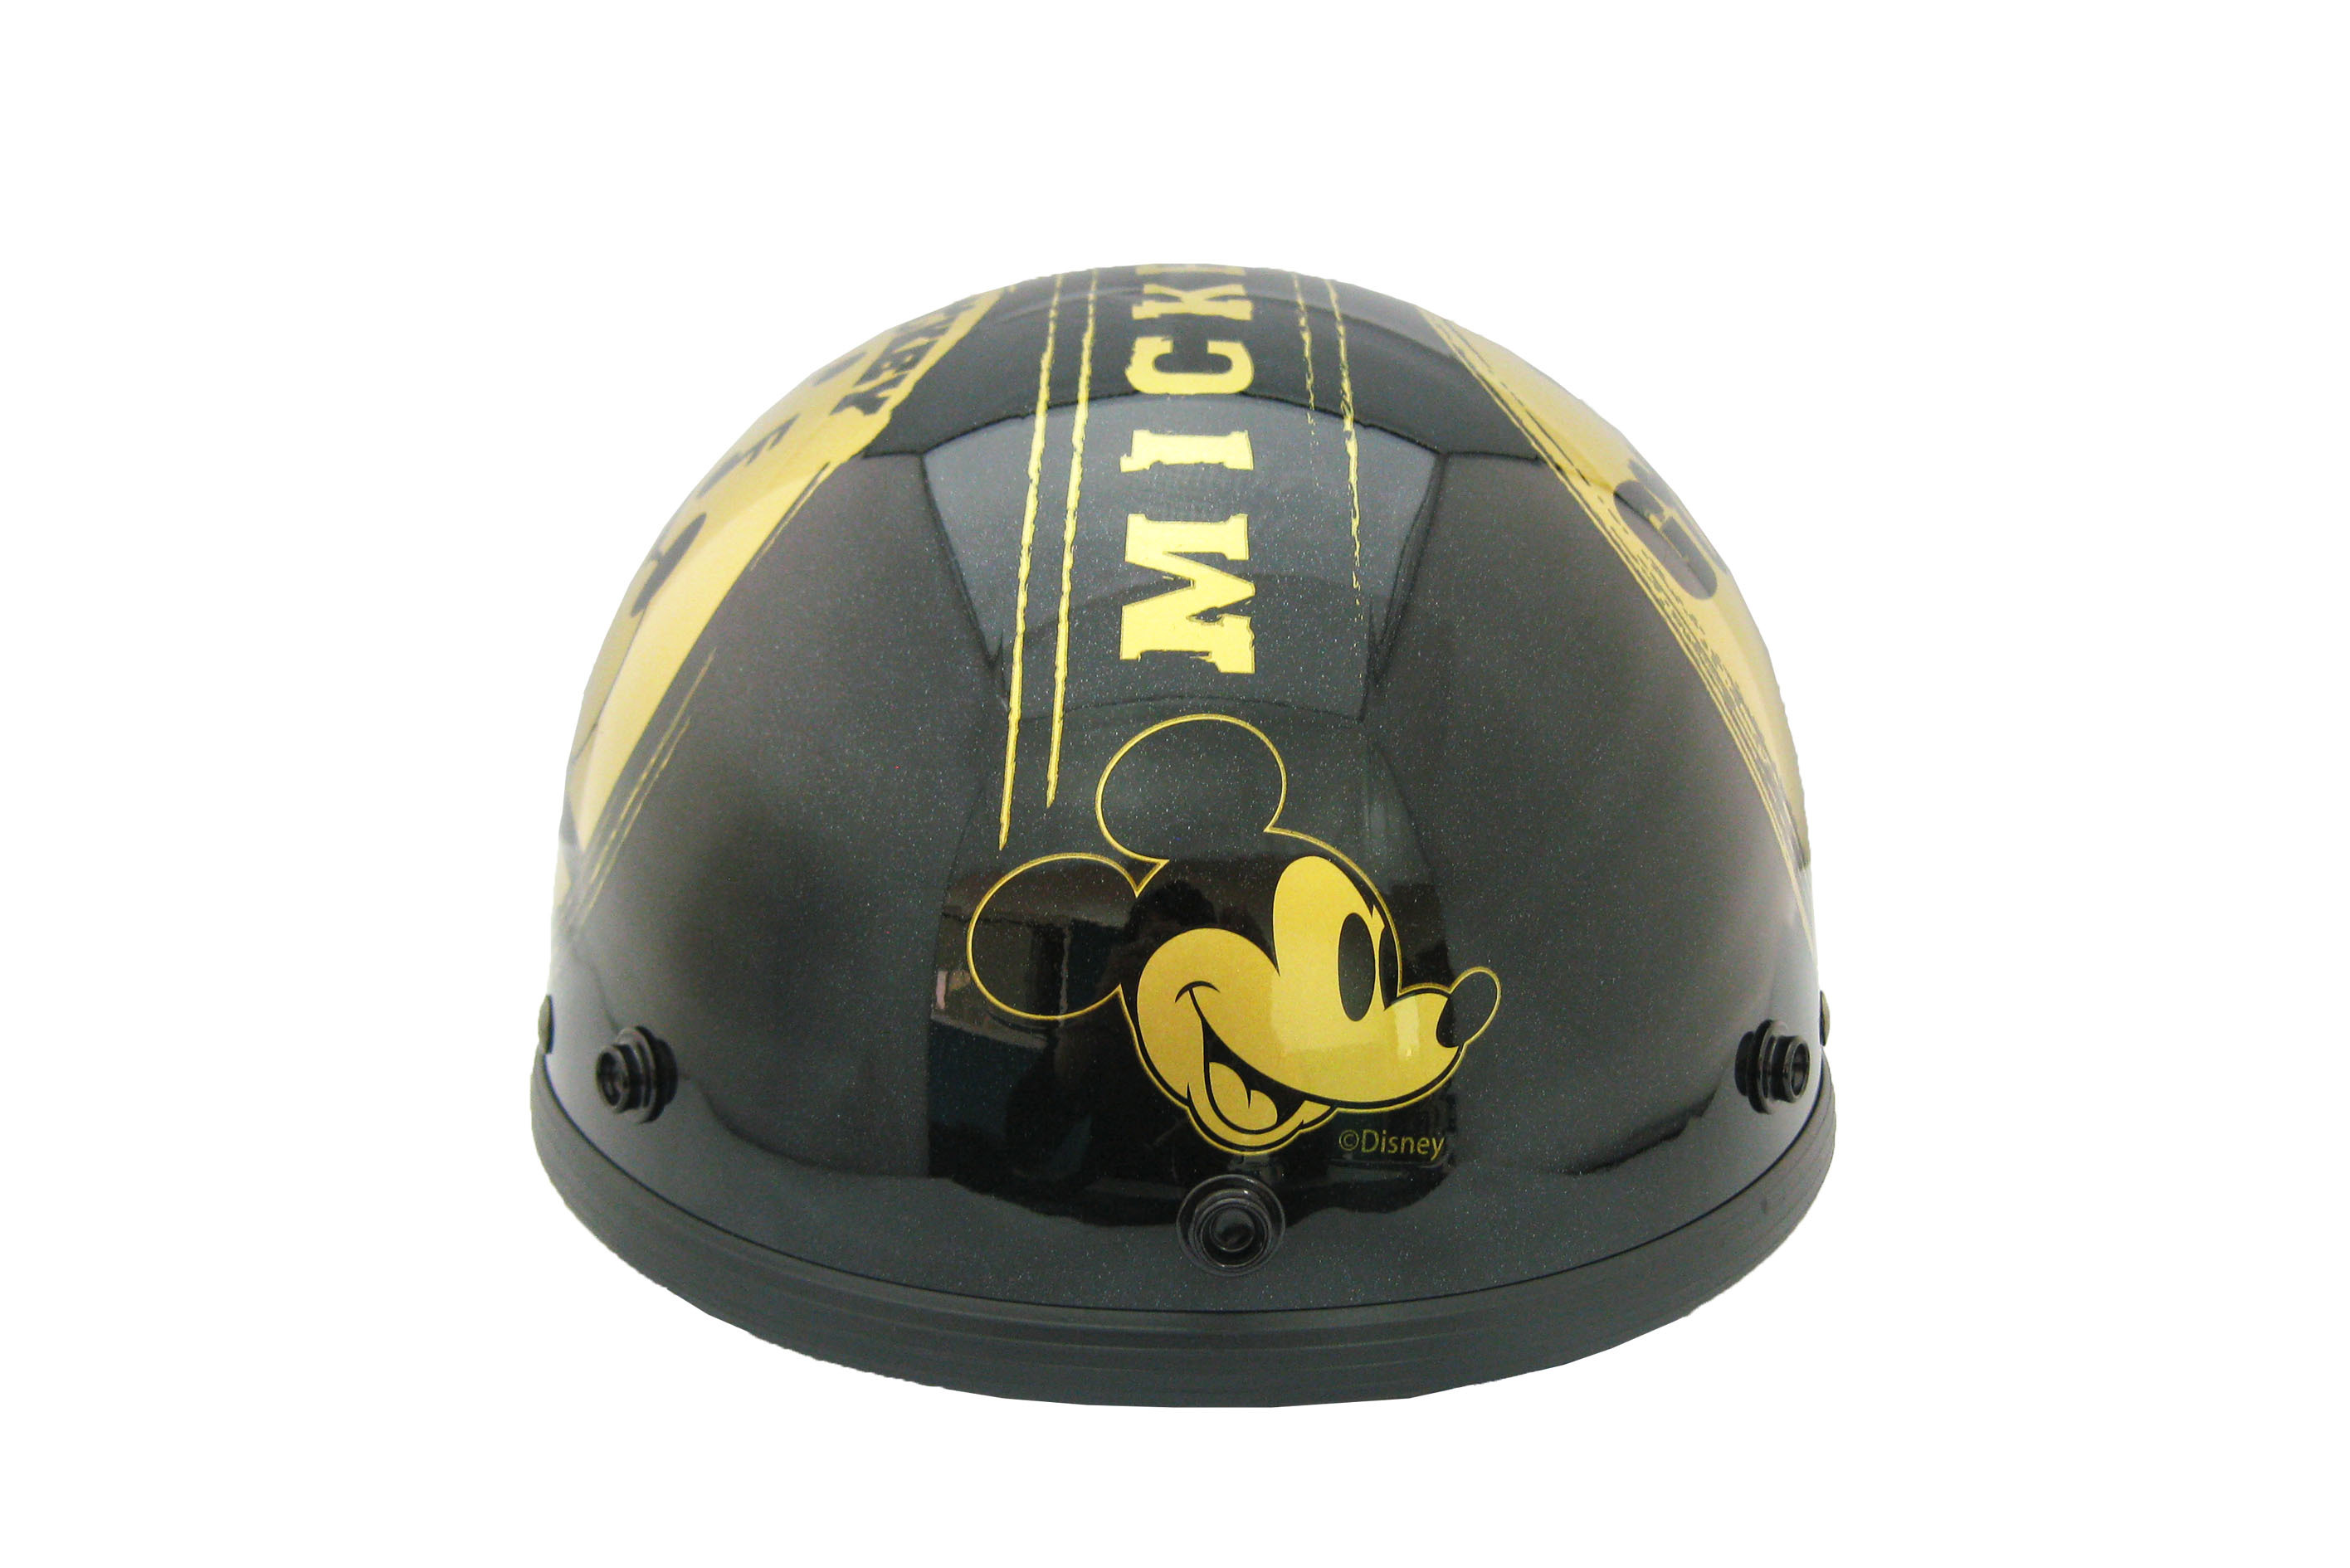 ディズニー正規ライセンス商品 ヴィンテージミッキーマウス Gold ハーフヘルメット ツバ別売り ミッキーマウス 白 赤 黒 Jwlsports